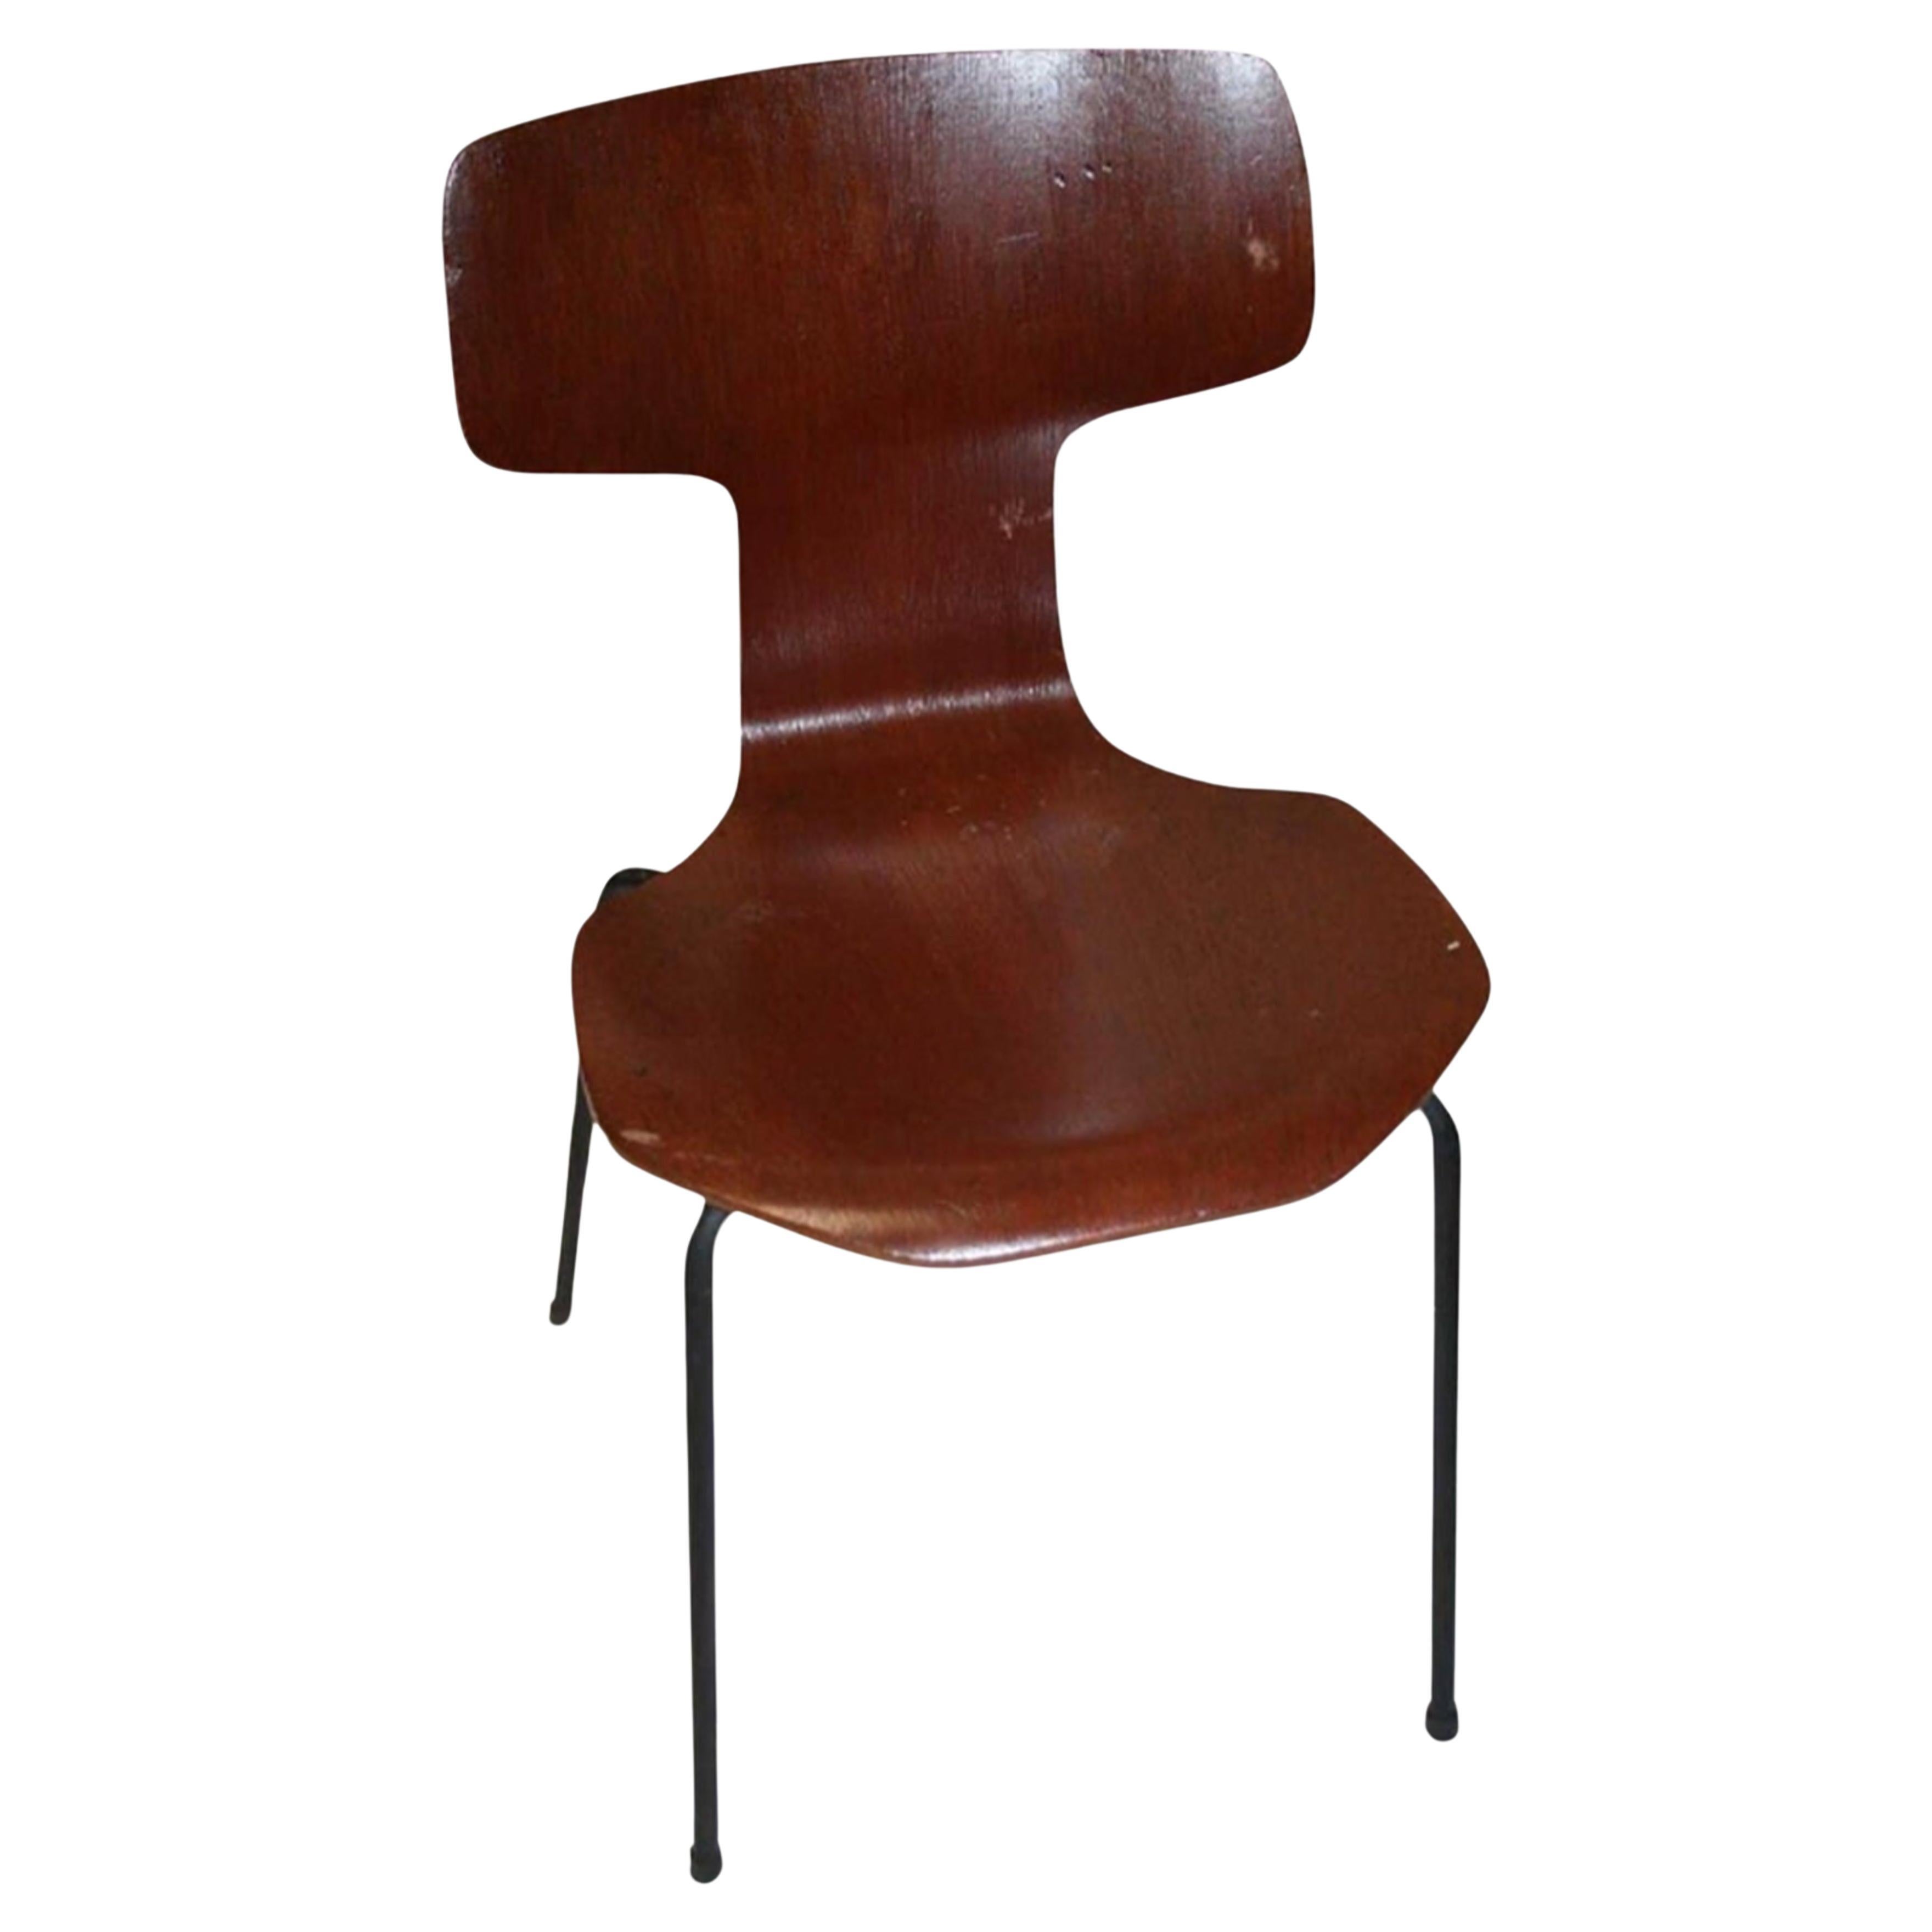 Original Labelled Arne Jacobsen for Fritz Hansen Model 3103 "Hammer Chair" 1965